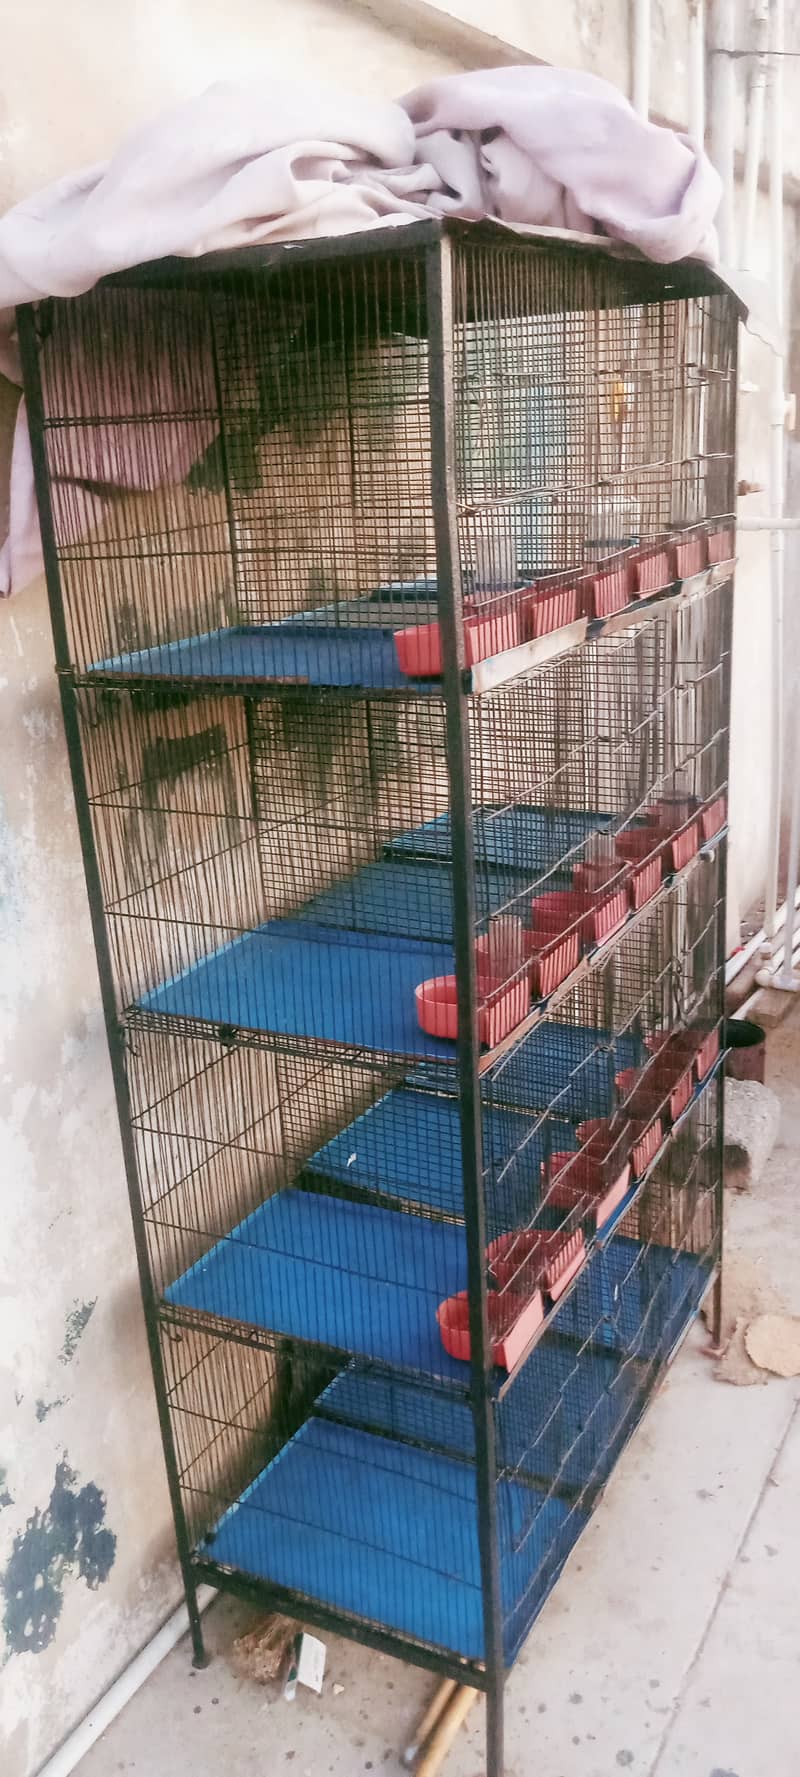 parrots cage 2